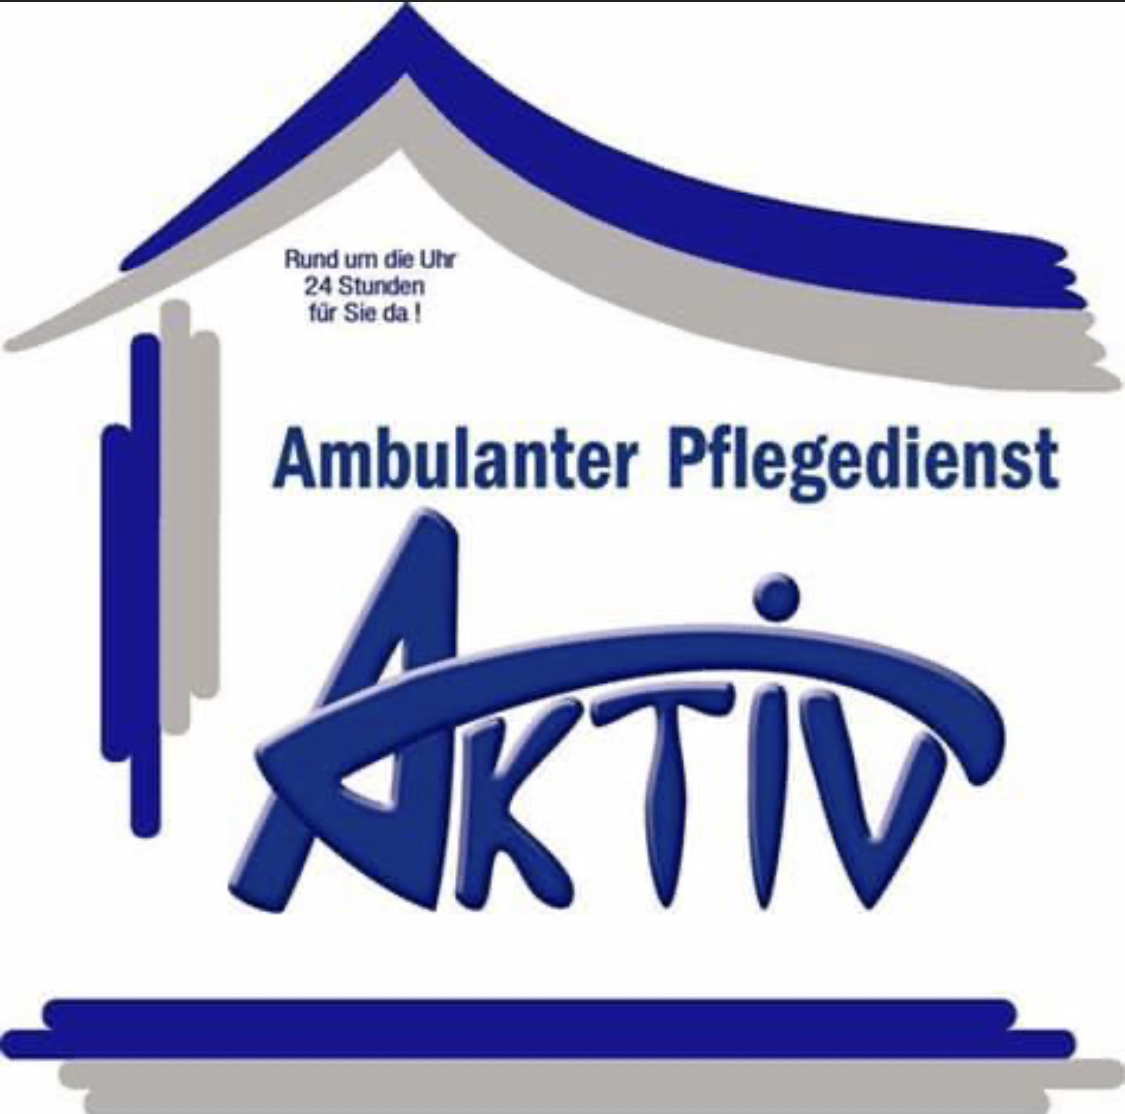 Logo: Ambulanter Pflegedienst Aktiv GmbH